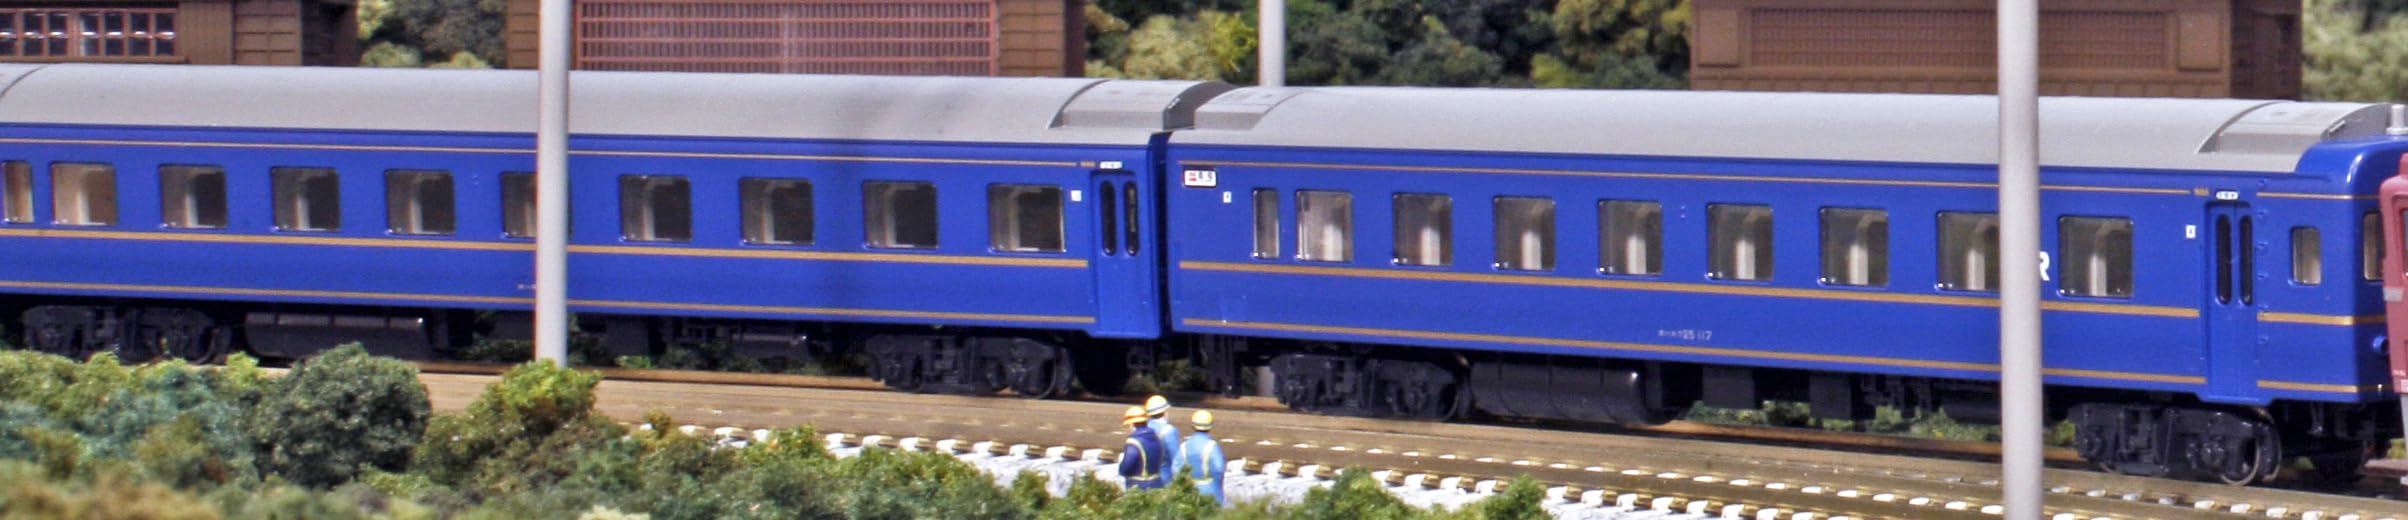 Kato Japan 24 Serie N Spur Sleeper Express Nihonkai 5-Wagen-Erweiterungsset 10-882 Modelleisenbahn-Personenwagen